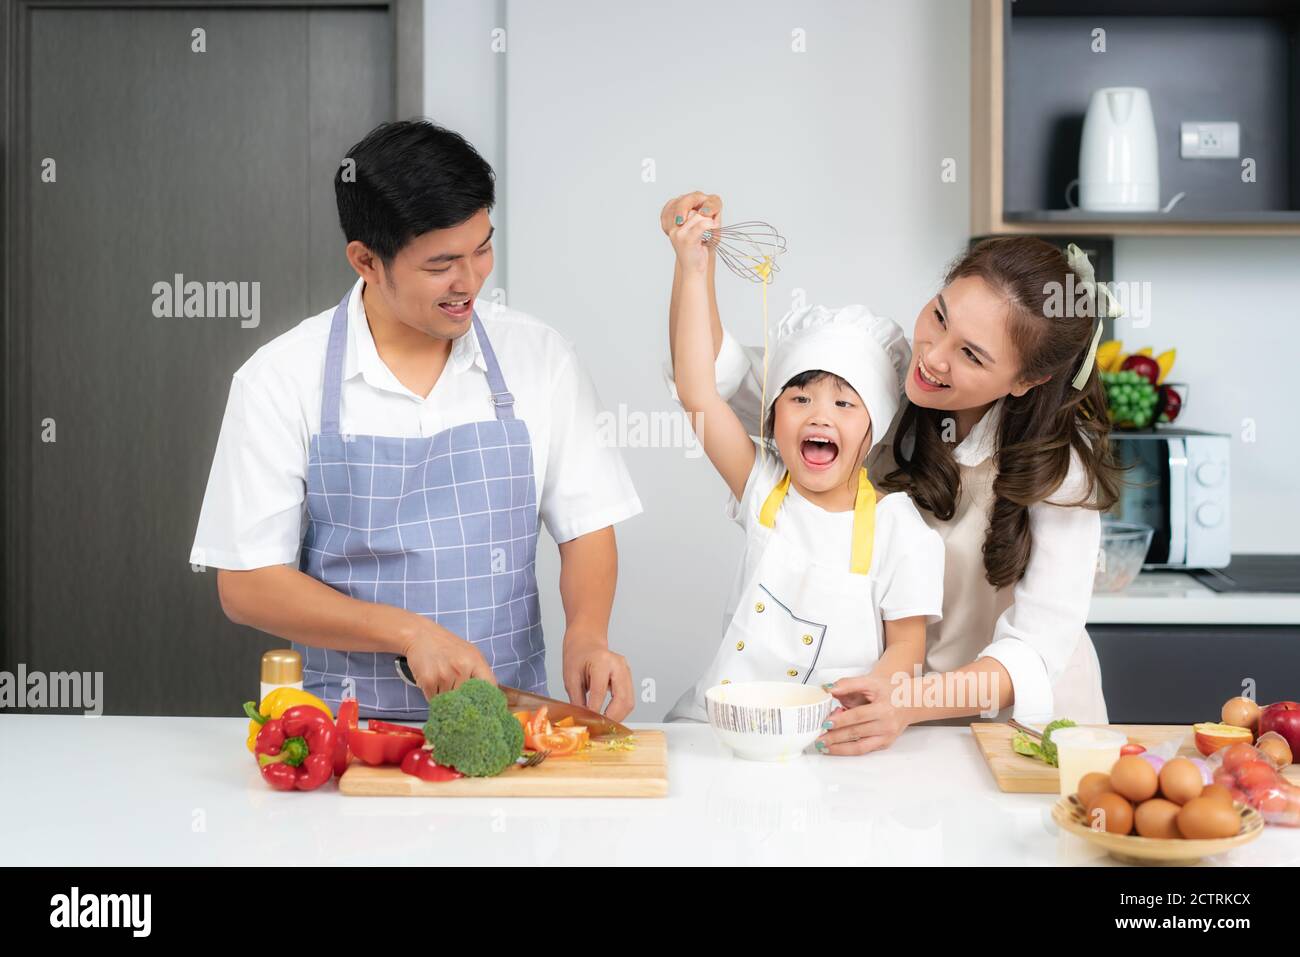 Asiatische Familie bricht ein Ei in die Schüssel und Tochter Rühreier in Schüssel auf weißem Tisch und sieht glücklich aus Essen kochen mit ihrem Vater und mot Stockfoto